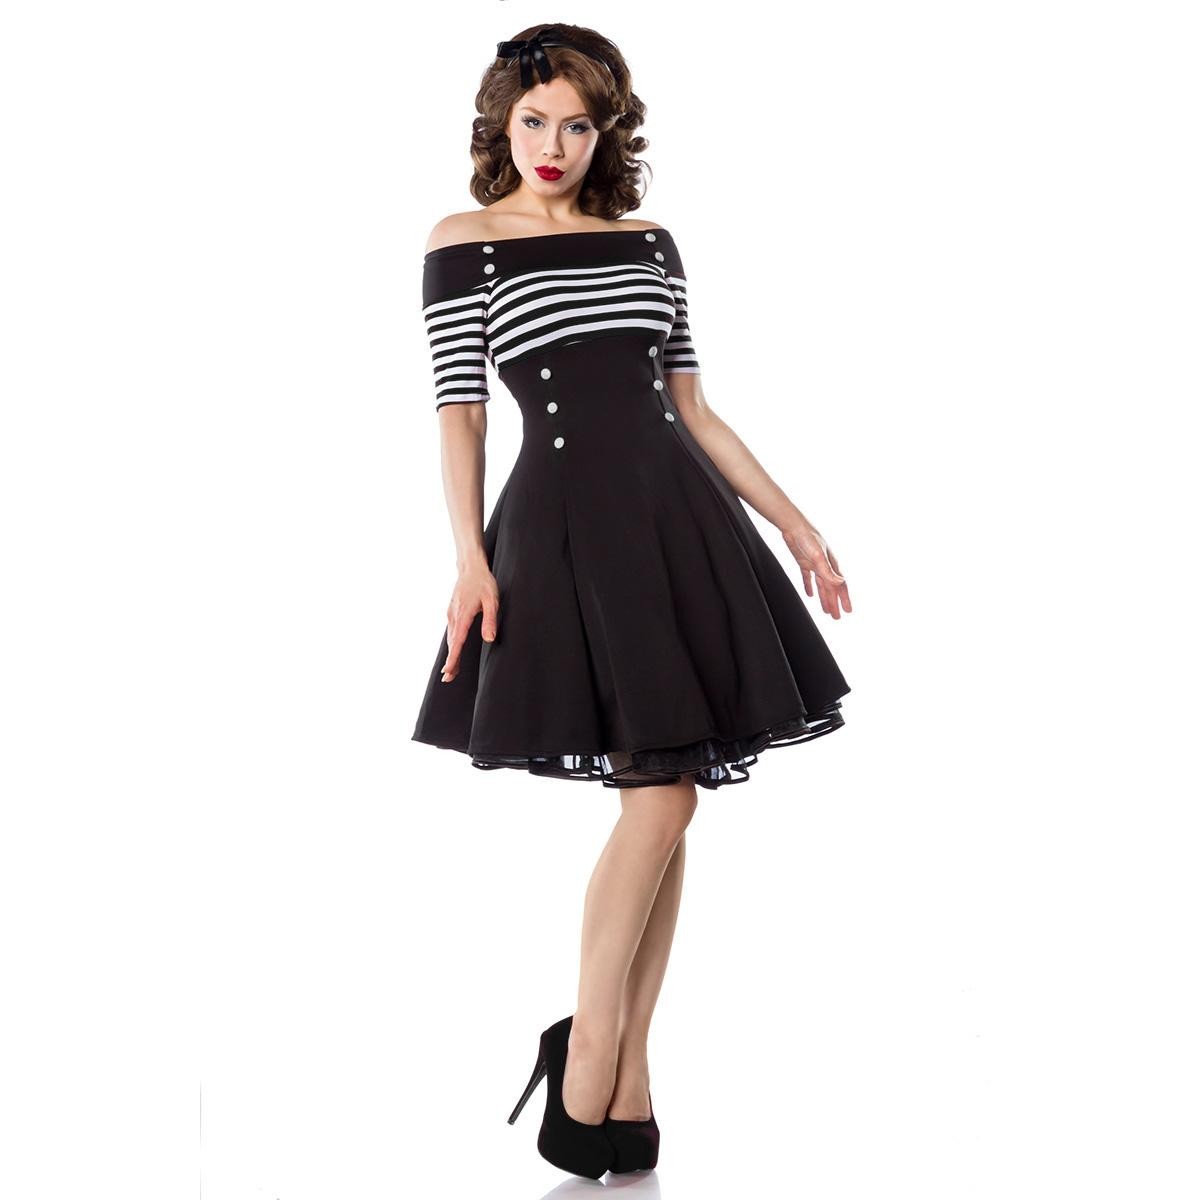  Belsira  -  Vintage-Kleid  -  schwarz/weiß/stripe 